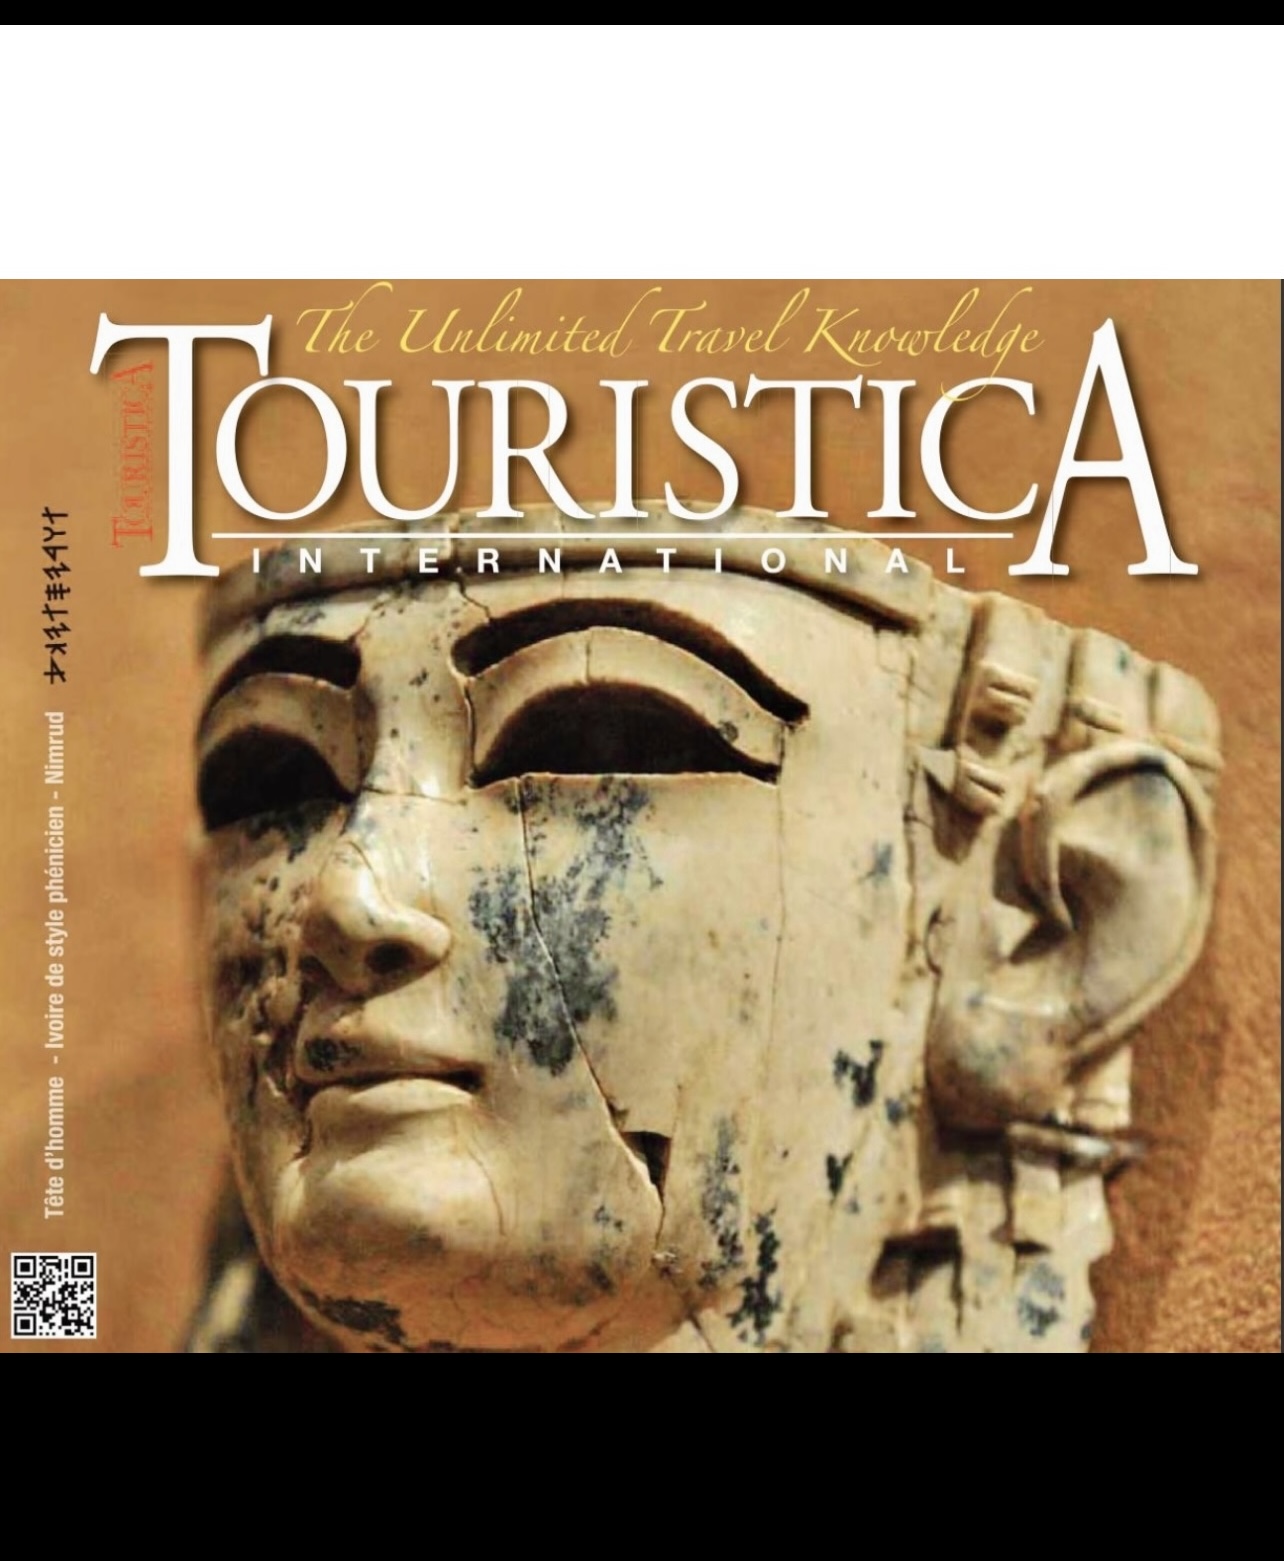 La couverture du magazine Touristica présente l'image d'une tête égyptienne, mettant en valeur la riche histoire et la culture des Phéniciens.